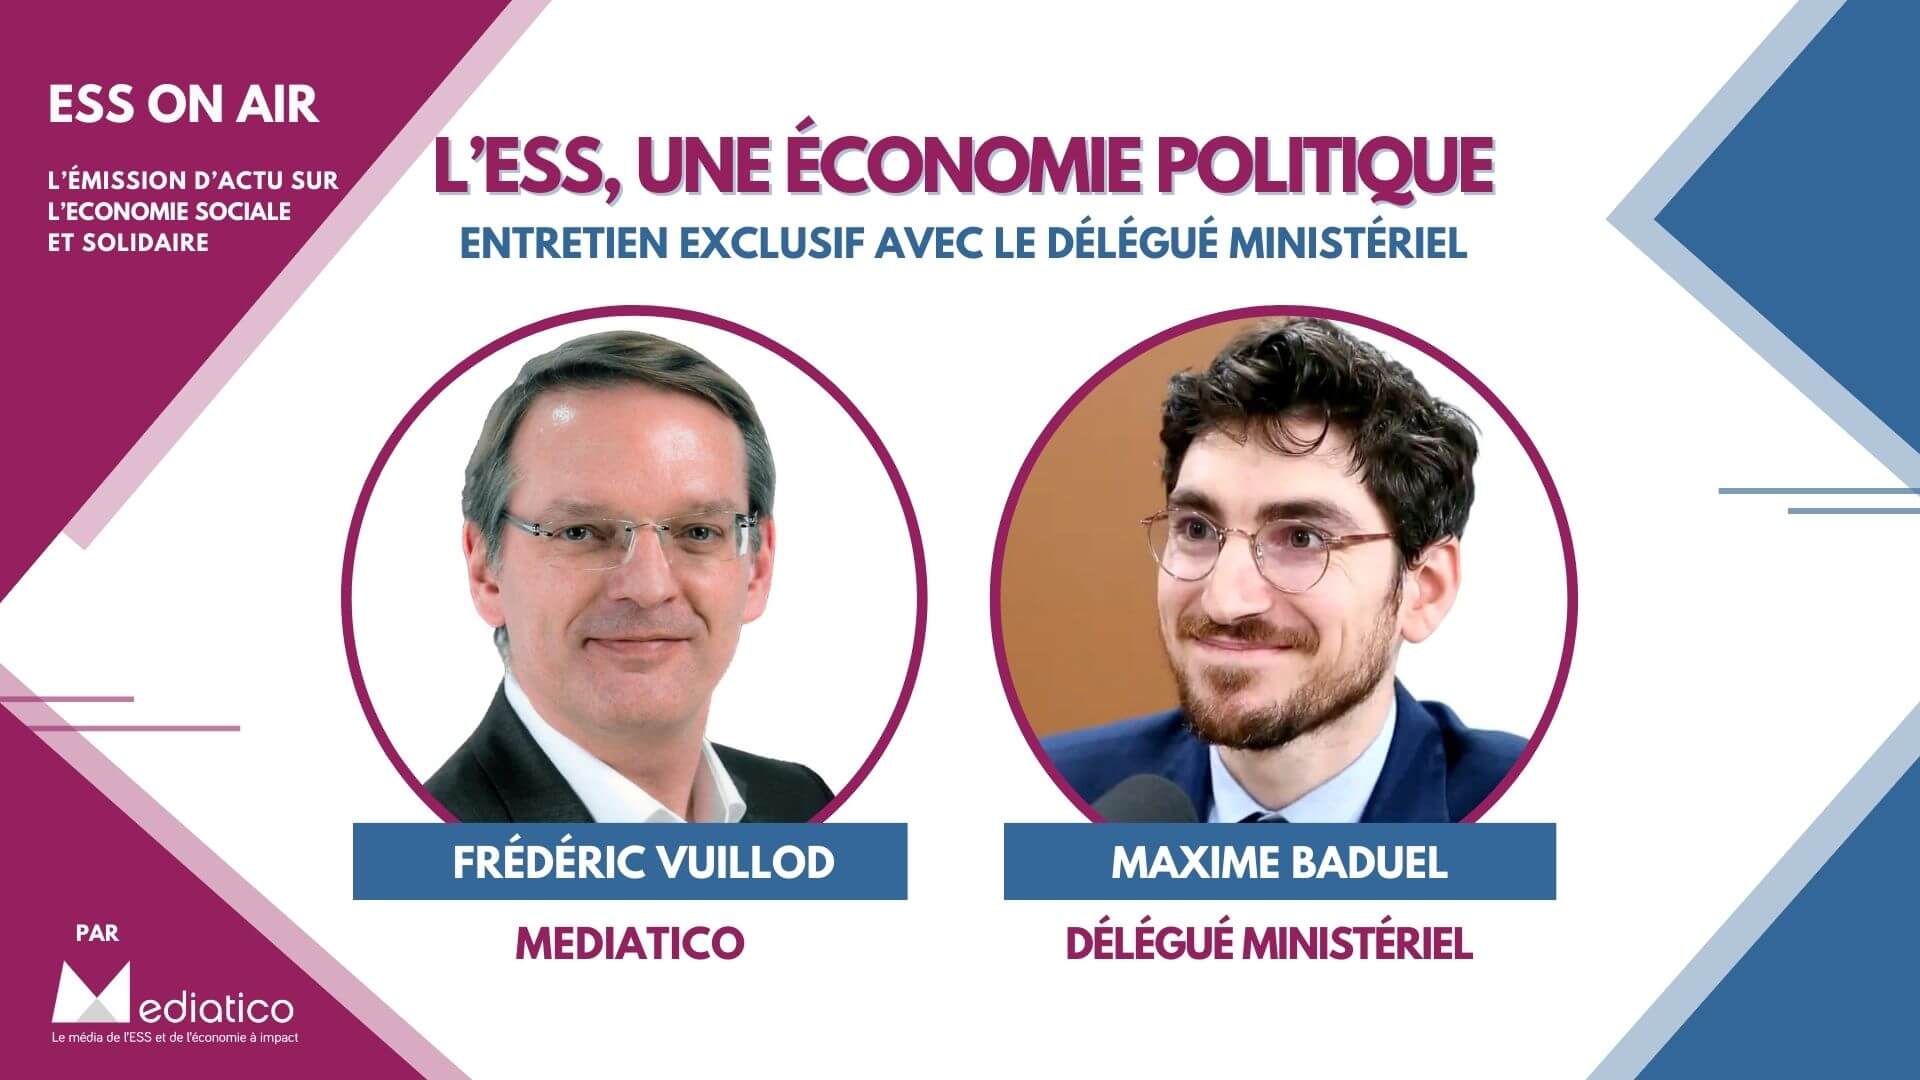 Maxime Baduel : « L’ESS est une économie politique » 